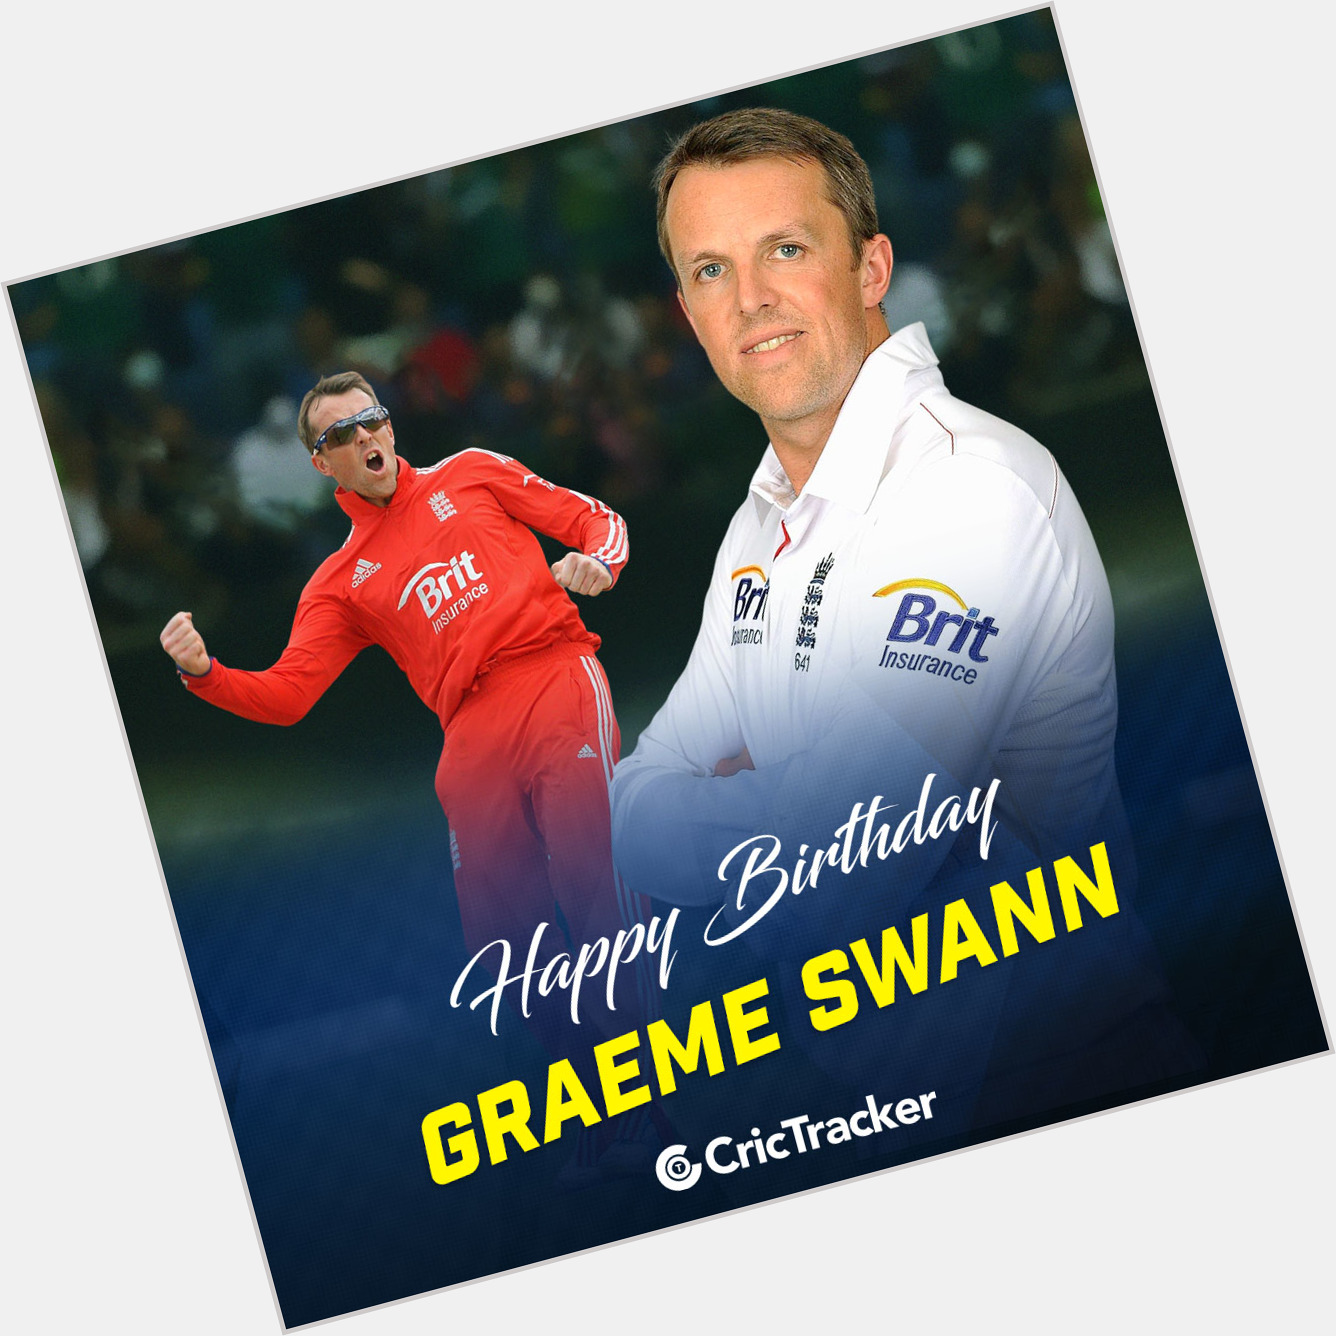 Happy birthday Graeme Swann     